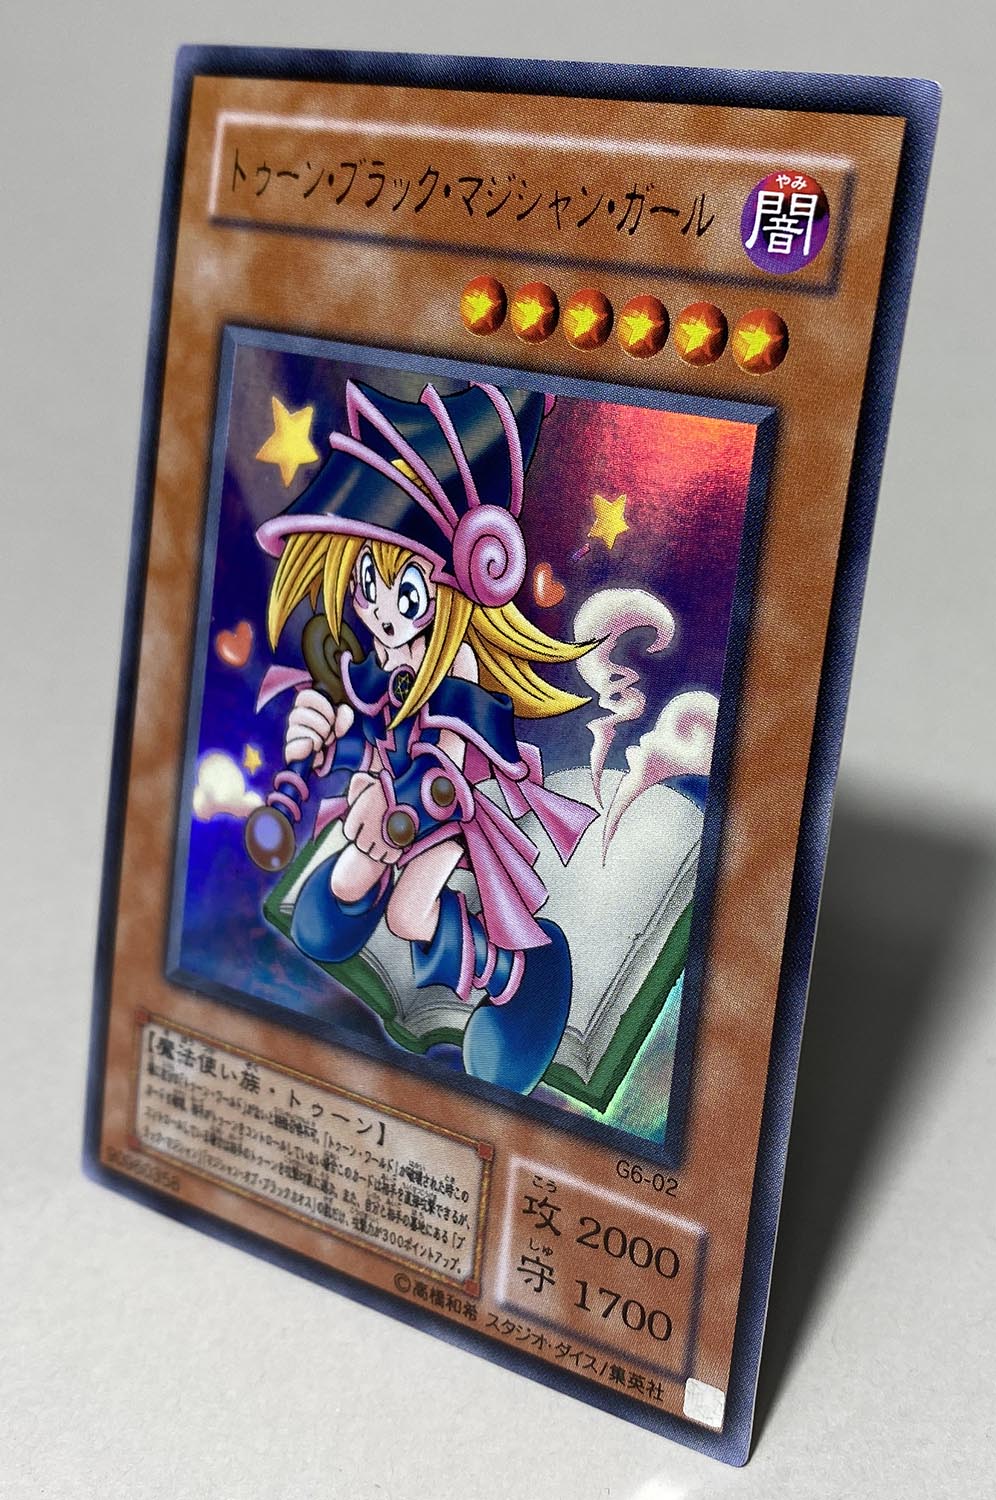 遊戯王カード トゥーン・ブラック・マジシャン・ガール G6-02 UR